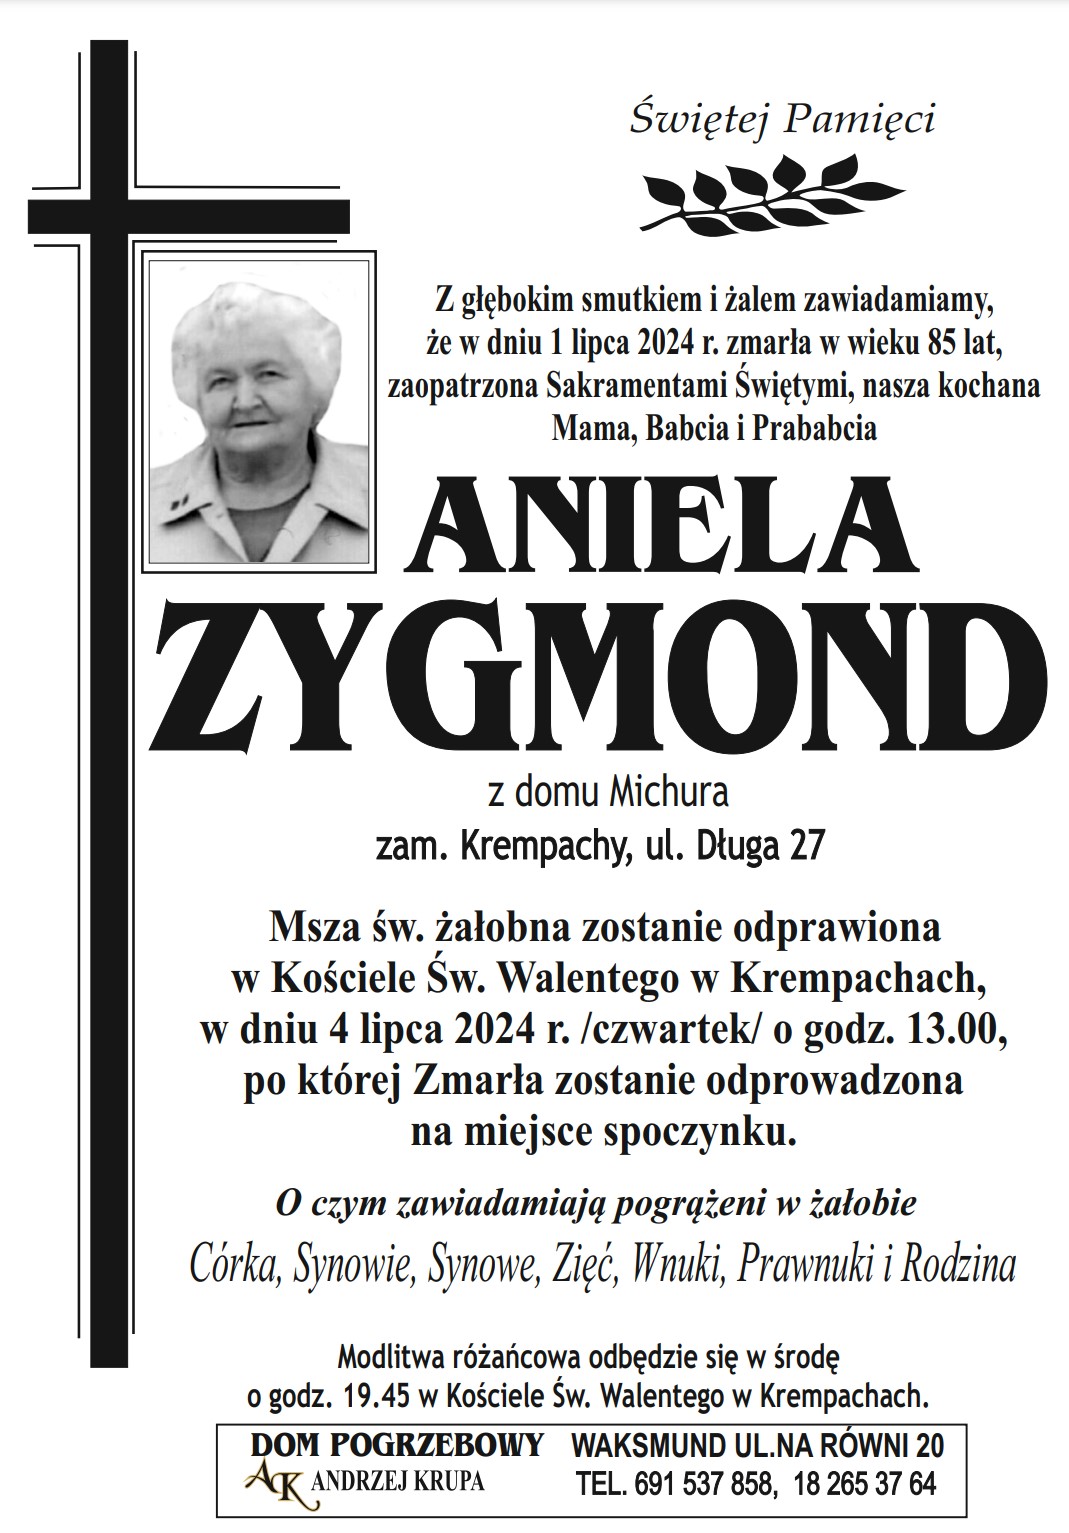 Aniela Zygmond